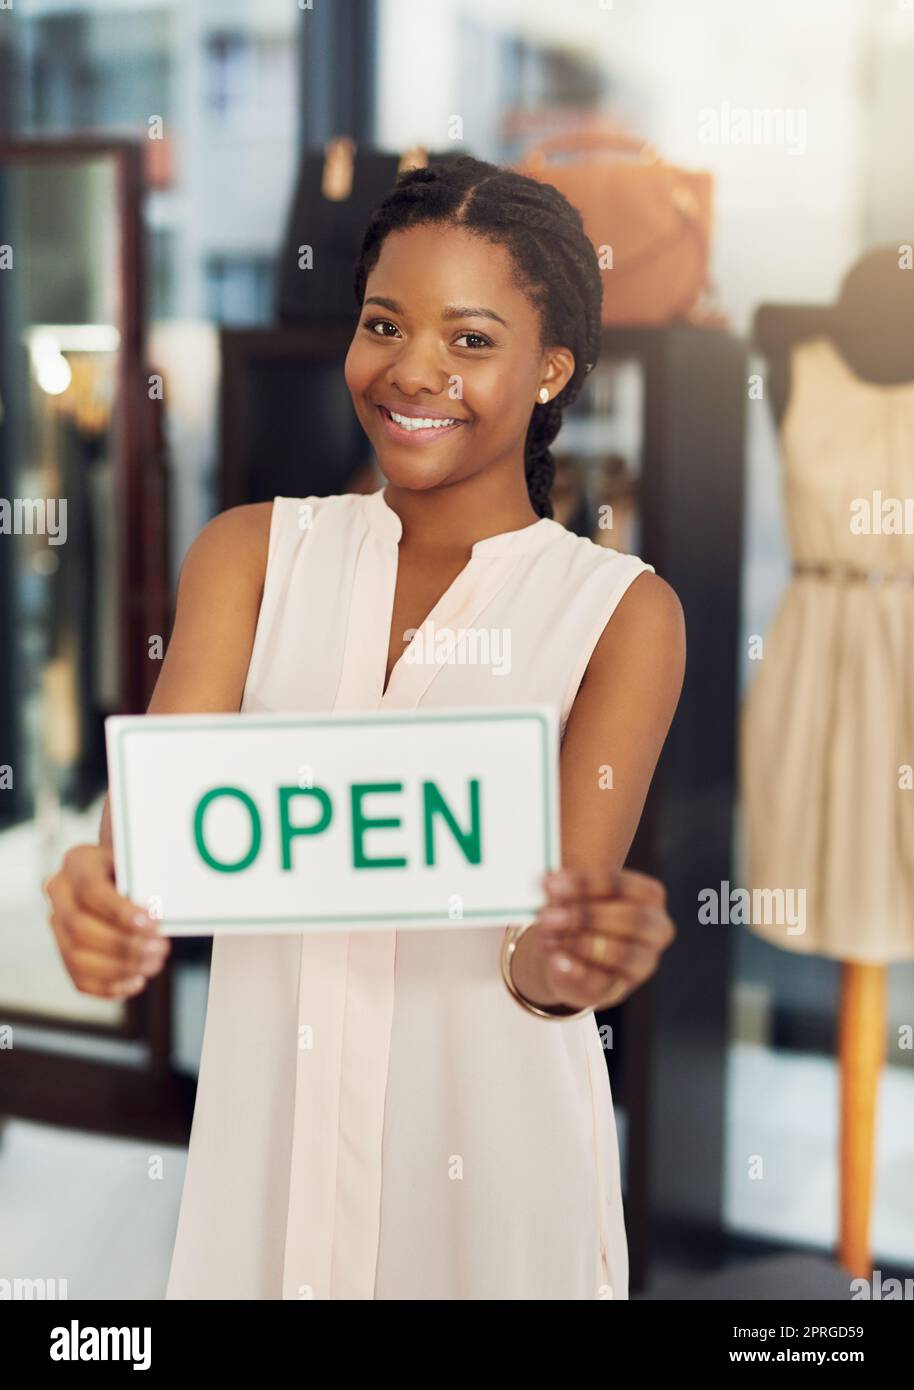 Kommen Sie vorbei und kaufen Sie unsere Verkäufe ein. Porträt einer jungen Geschäftsbesitzerin, die ein offenes Schild in ihrem Geschäft hält. Stockfoto